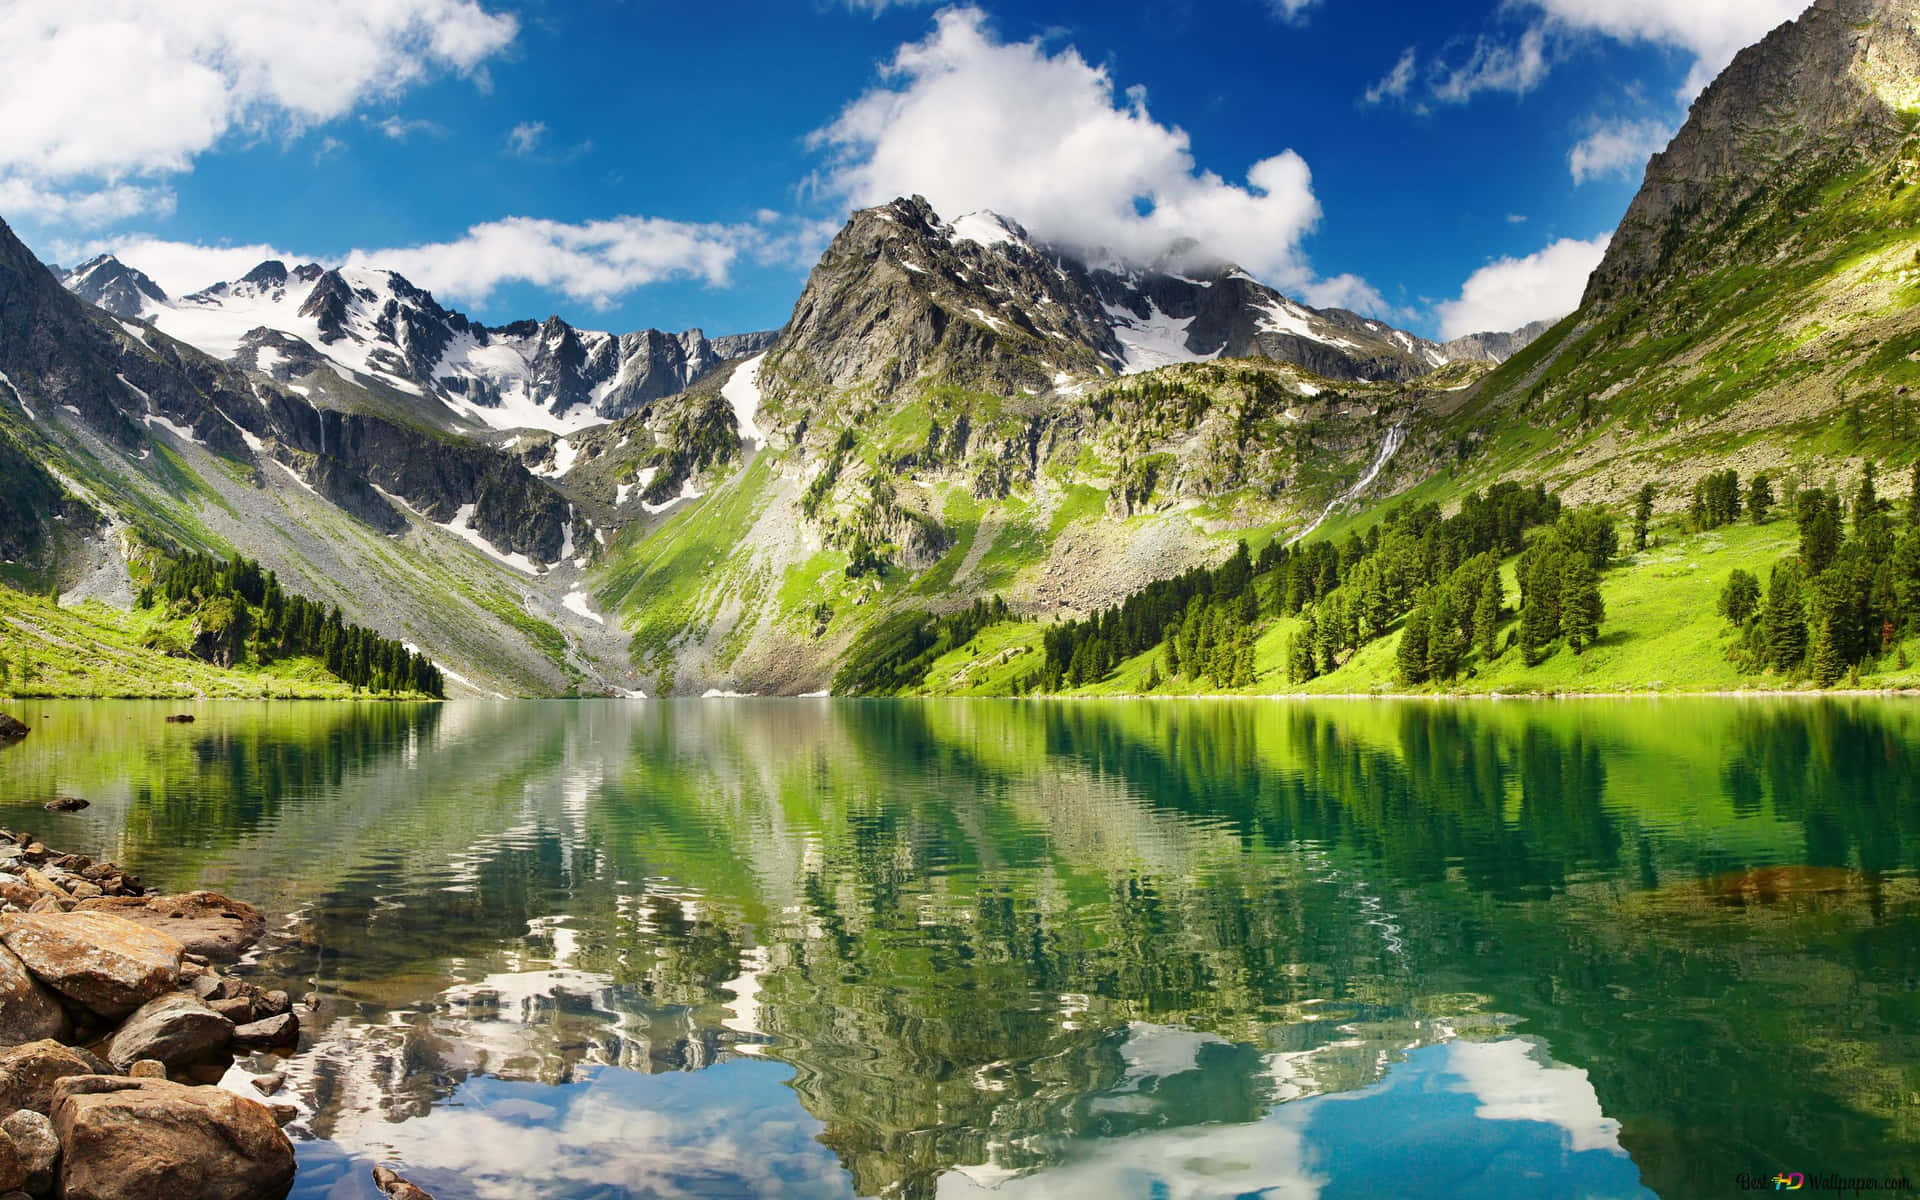 Sumérgeteen La Naturaleza En Este Hermoso Lago De Montaña. Fondo de pantalla